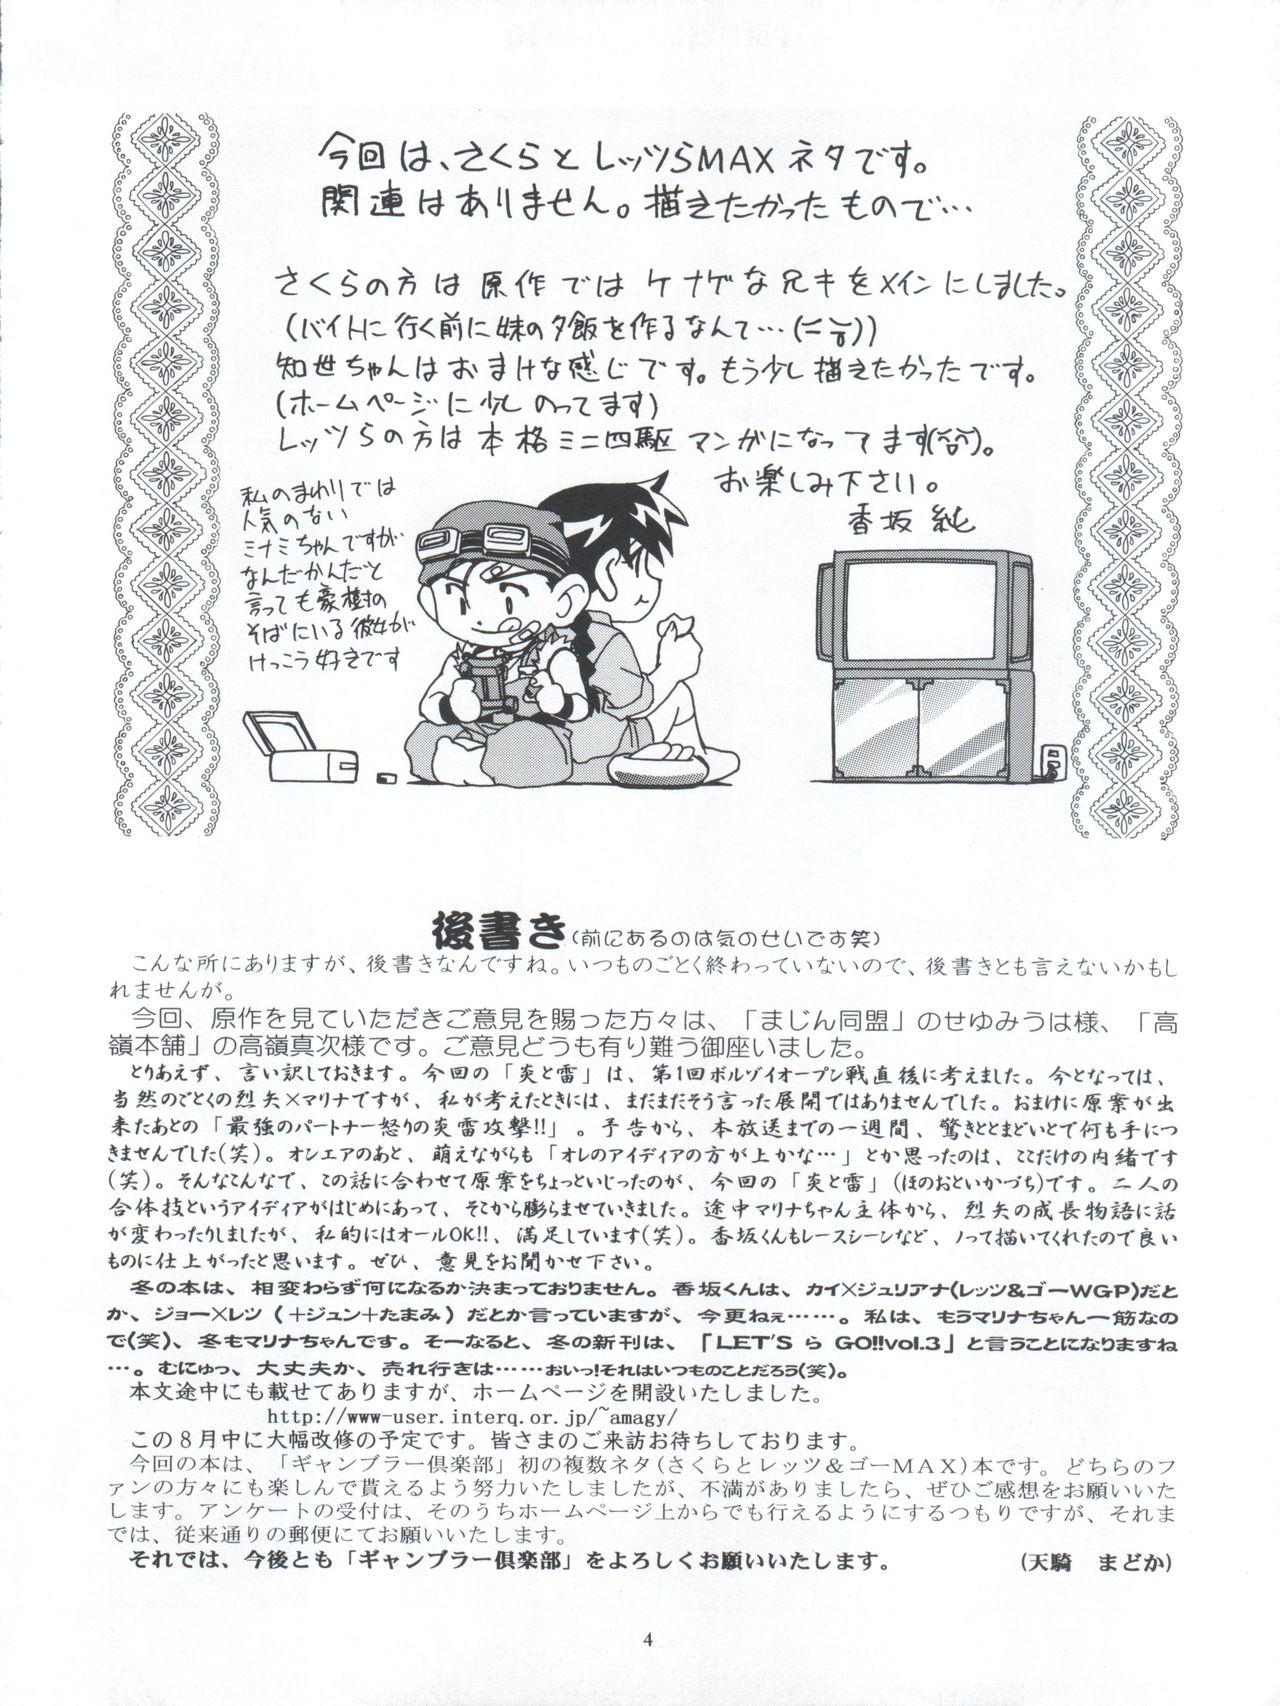 Feet LET'S Ra MIX - Cardcaptor sakura Bakusou kyoudai lets and go Gloryhole - Page 4